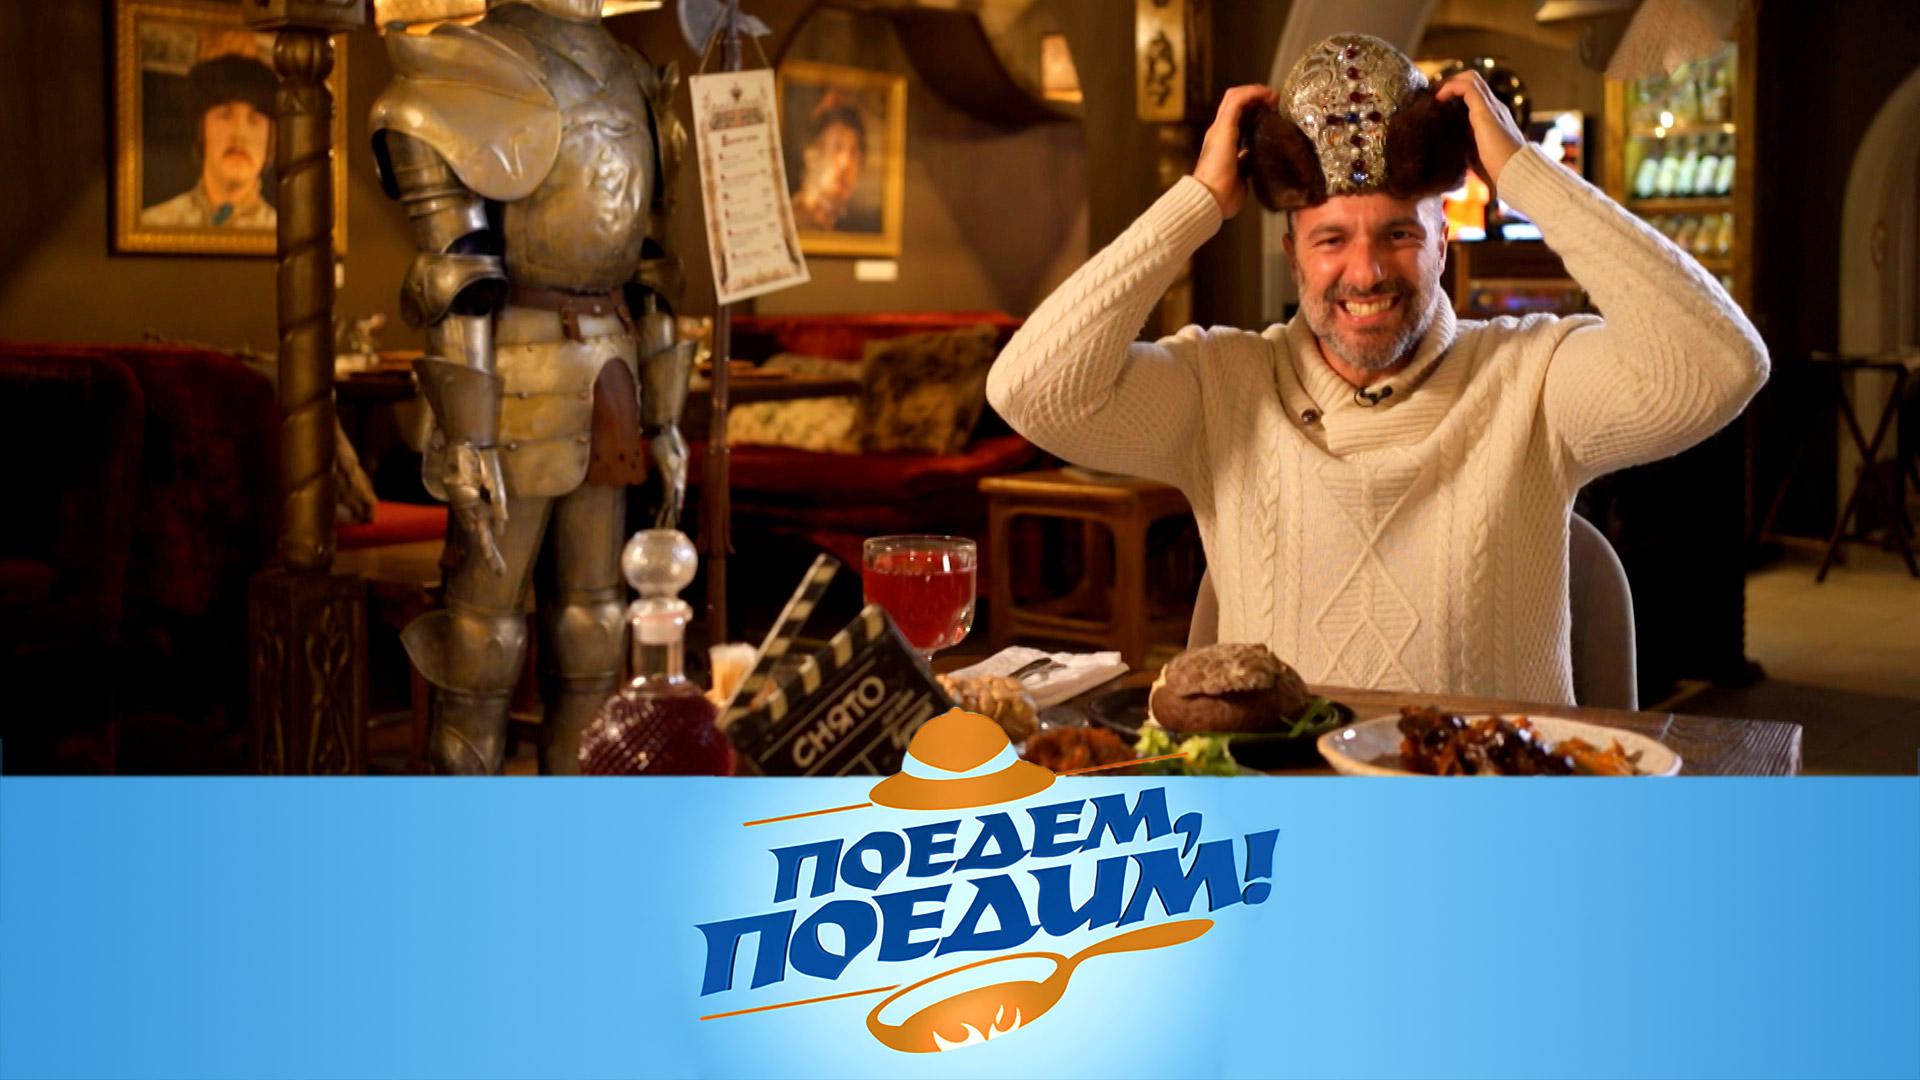 Ярославль: обед по-царски, блюда из селедки, медвежий бум и улитки-предсказатели | Поедем, поедим!